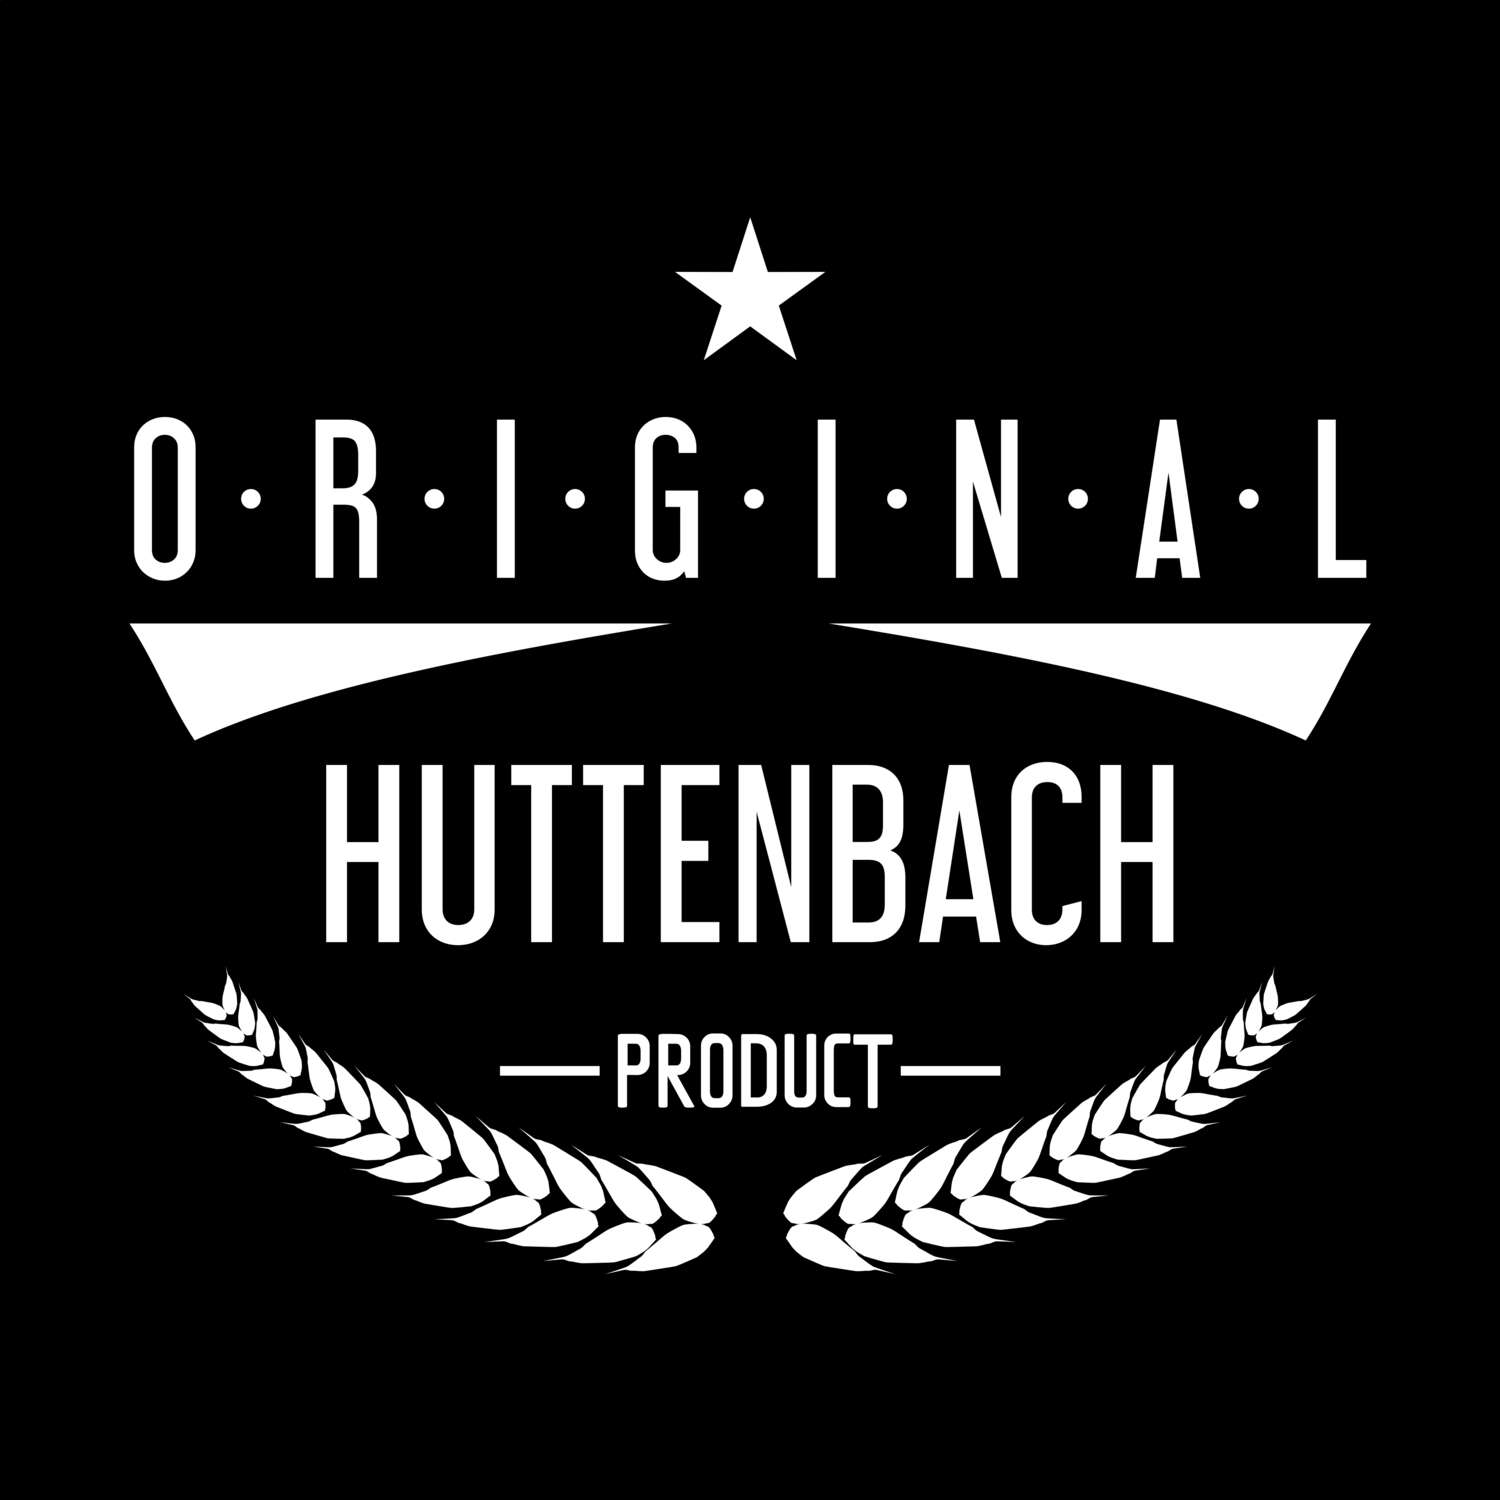 Huttenbach T-Shirt »Original Product«